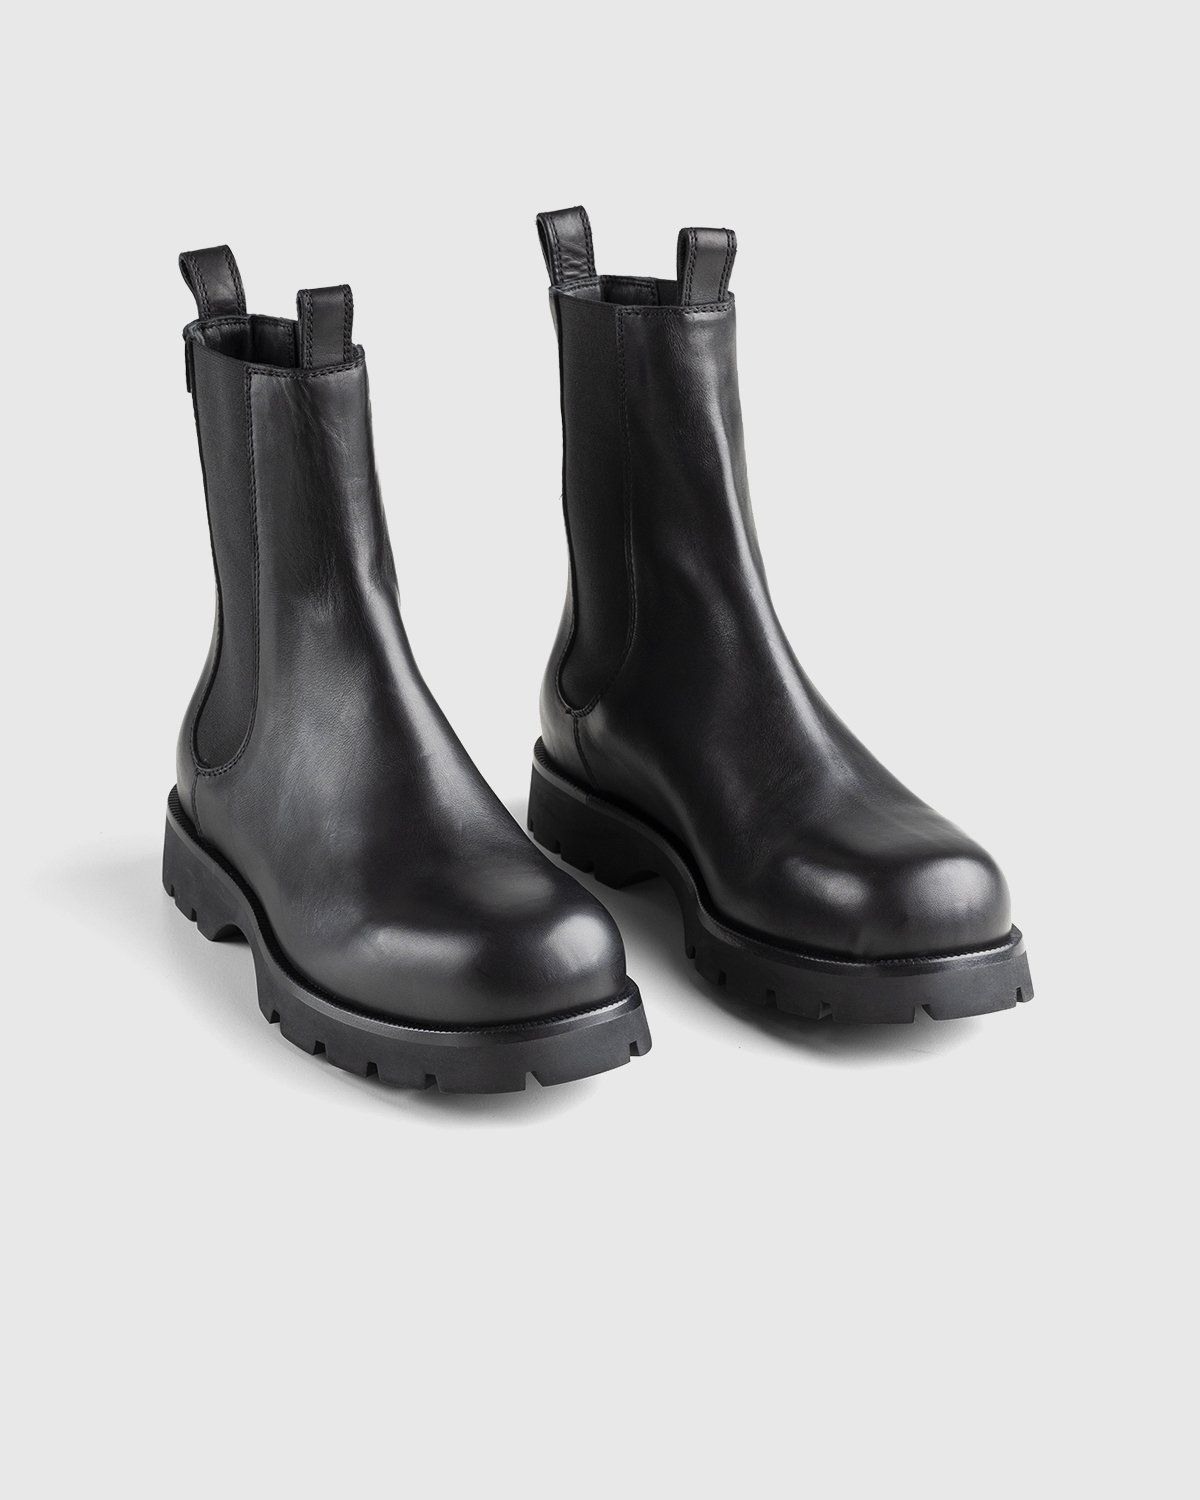 Jil Sander – Chelsea Boots Black - Image 3